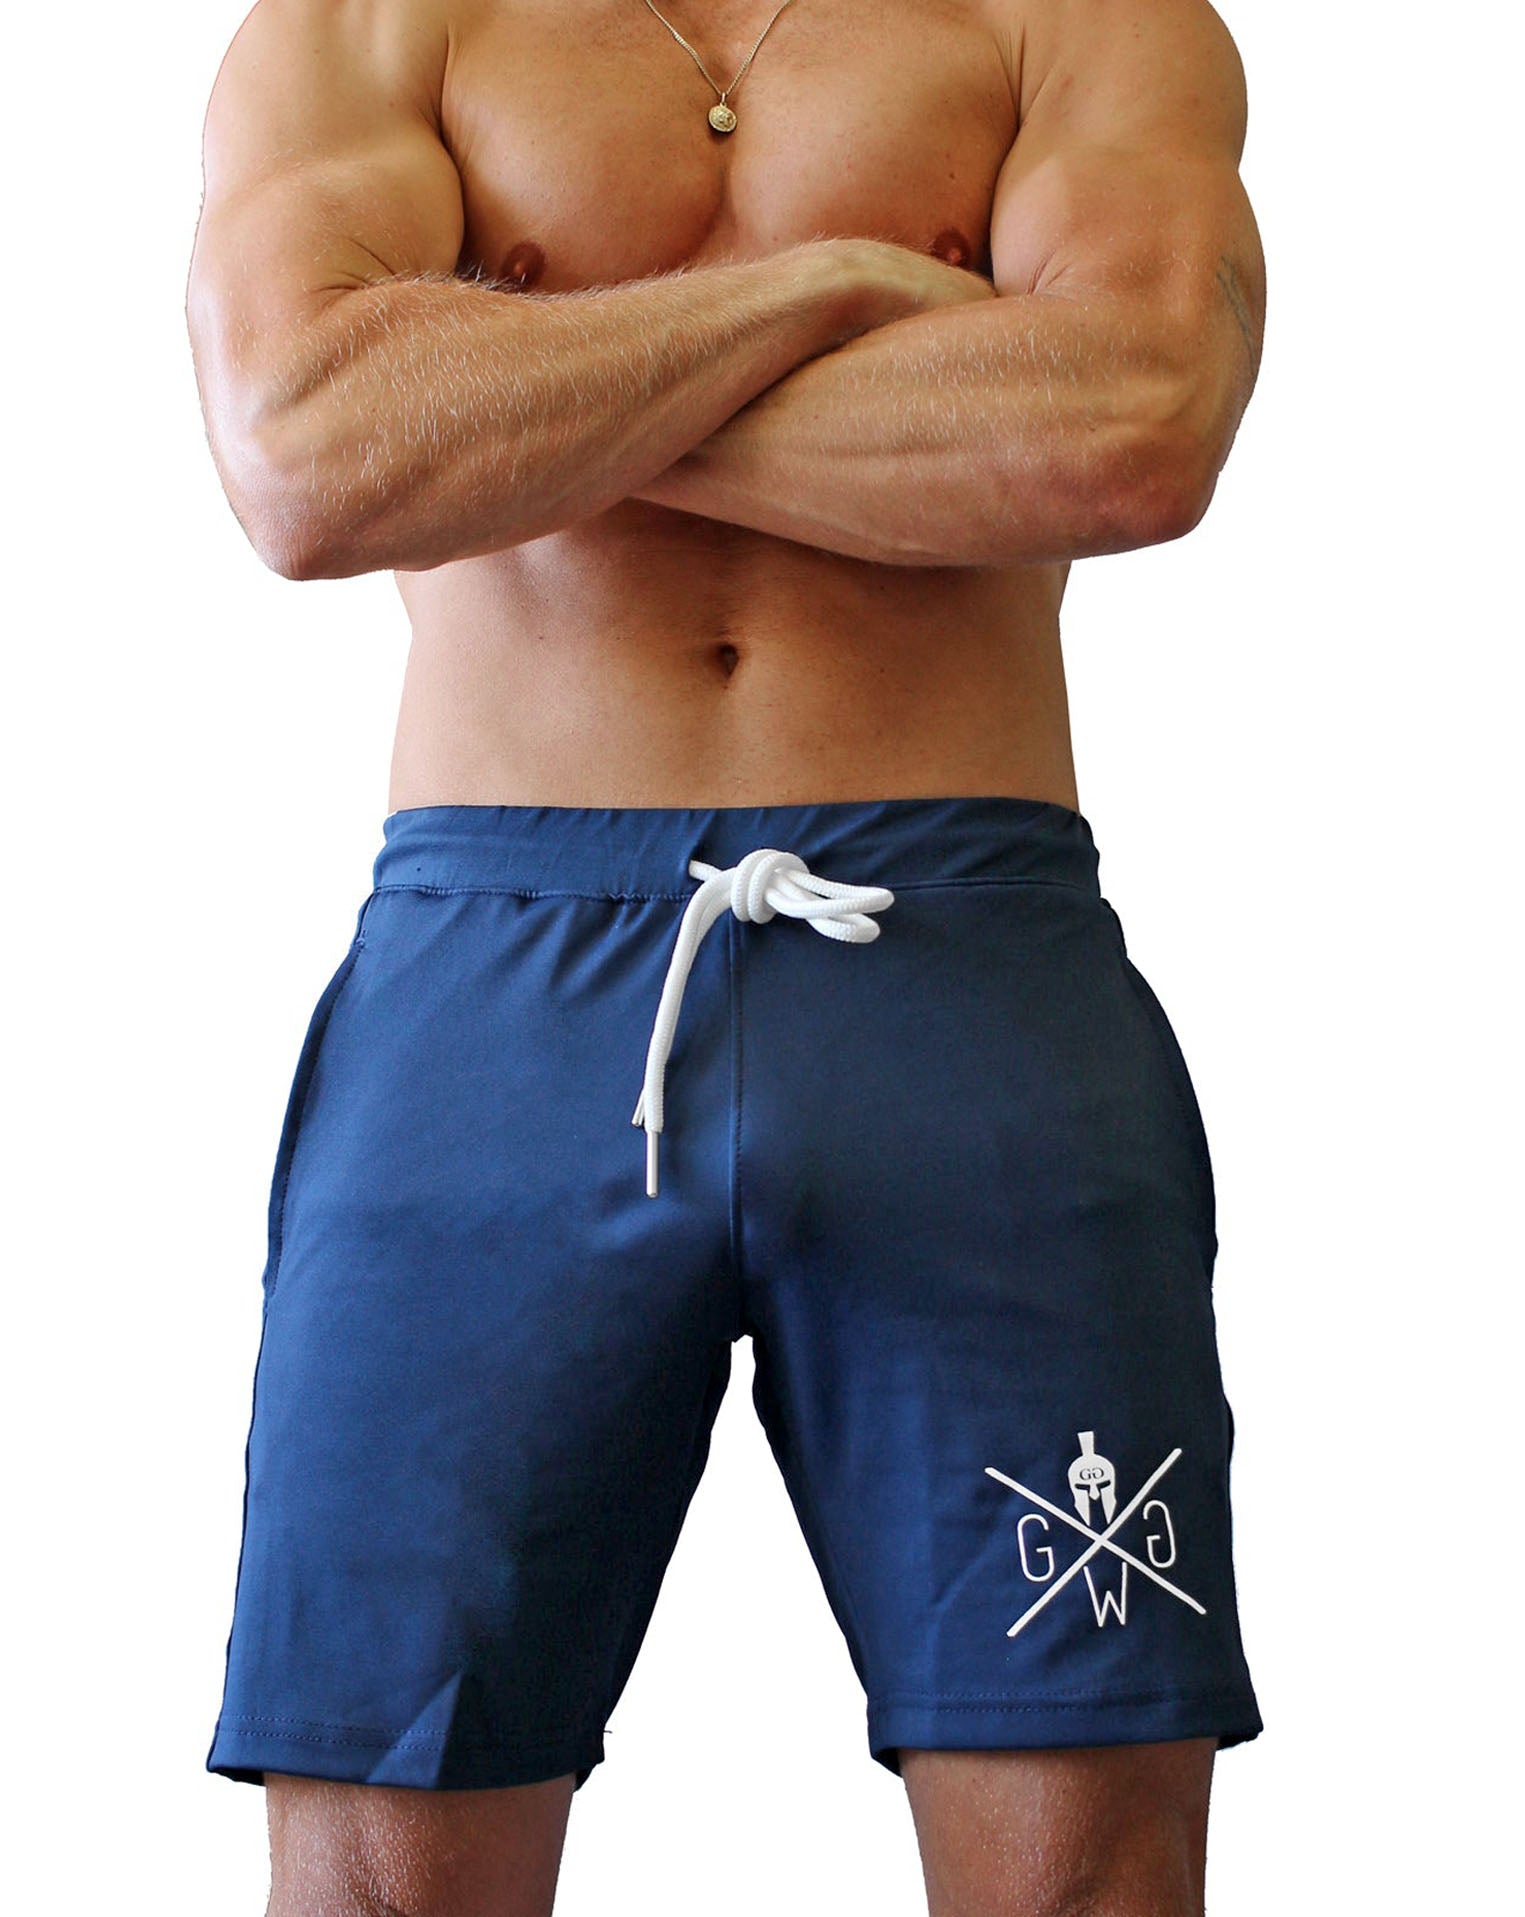 Hochwertige Night Blue Fitness Shorts für Herren, verstellbarer Kordelzug und bequeme Passform, von Gym Generation.